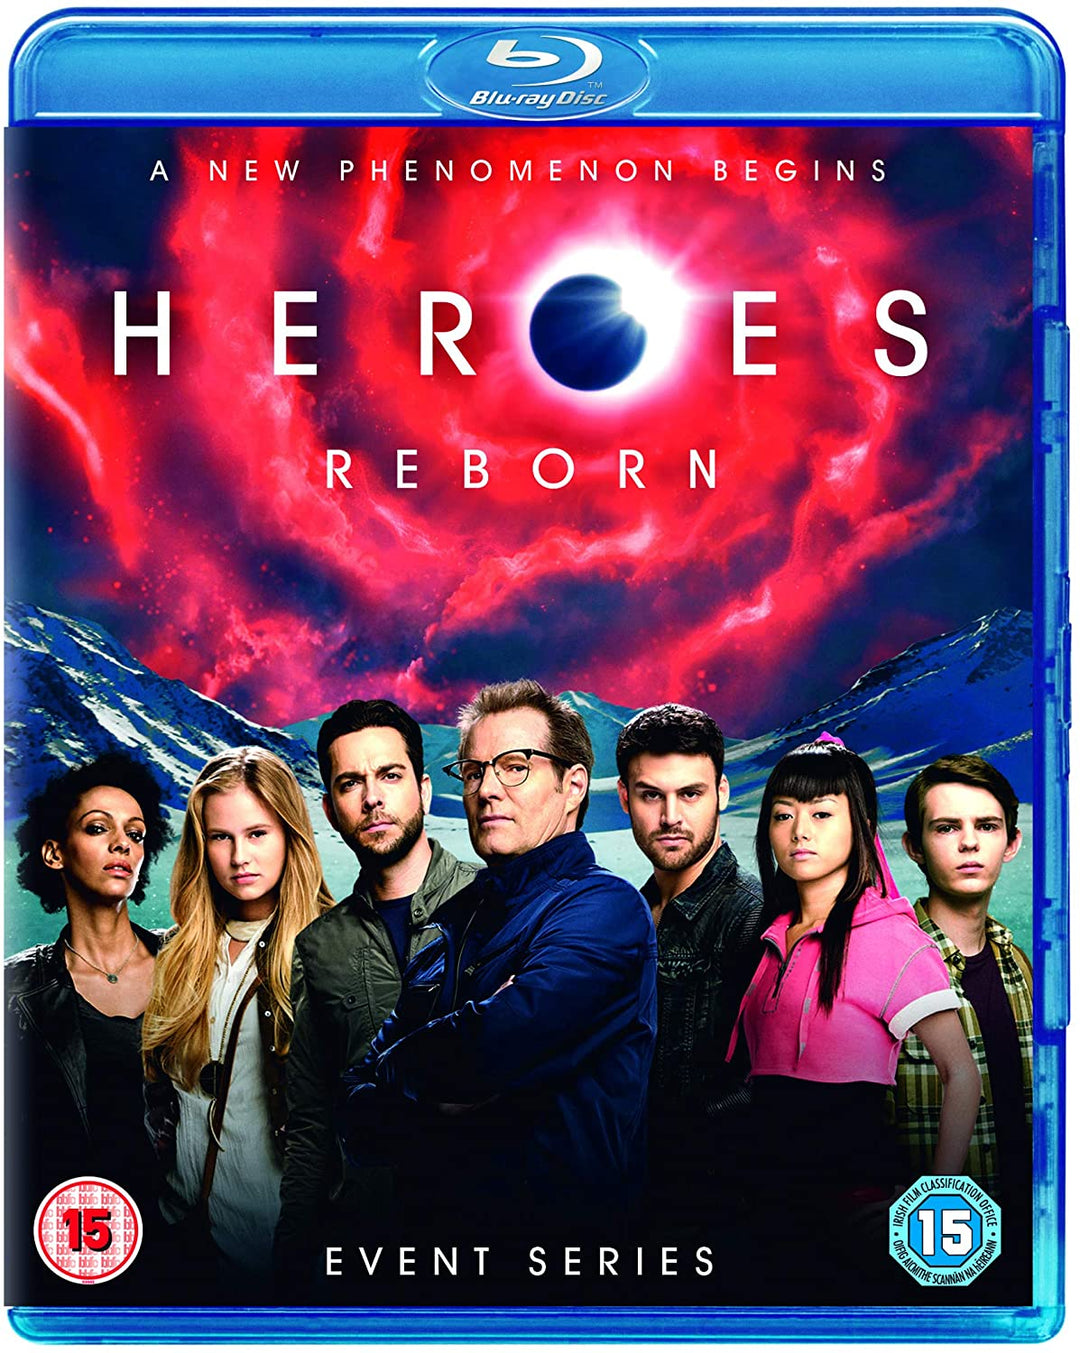 Heroes herboren [Blu-ray] [2016]